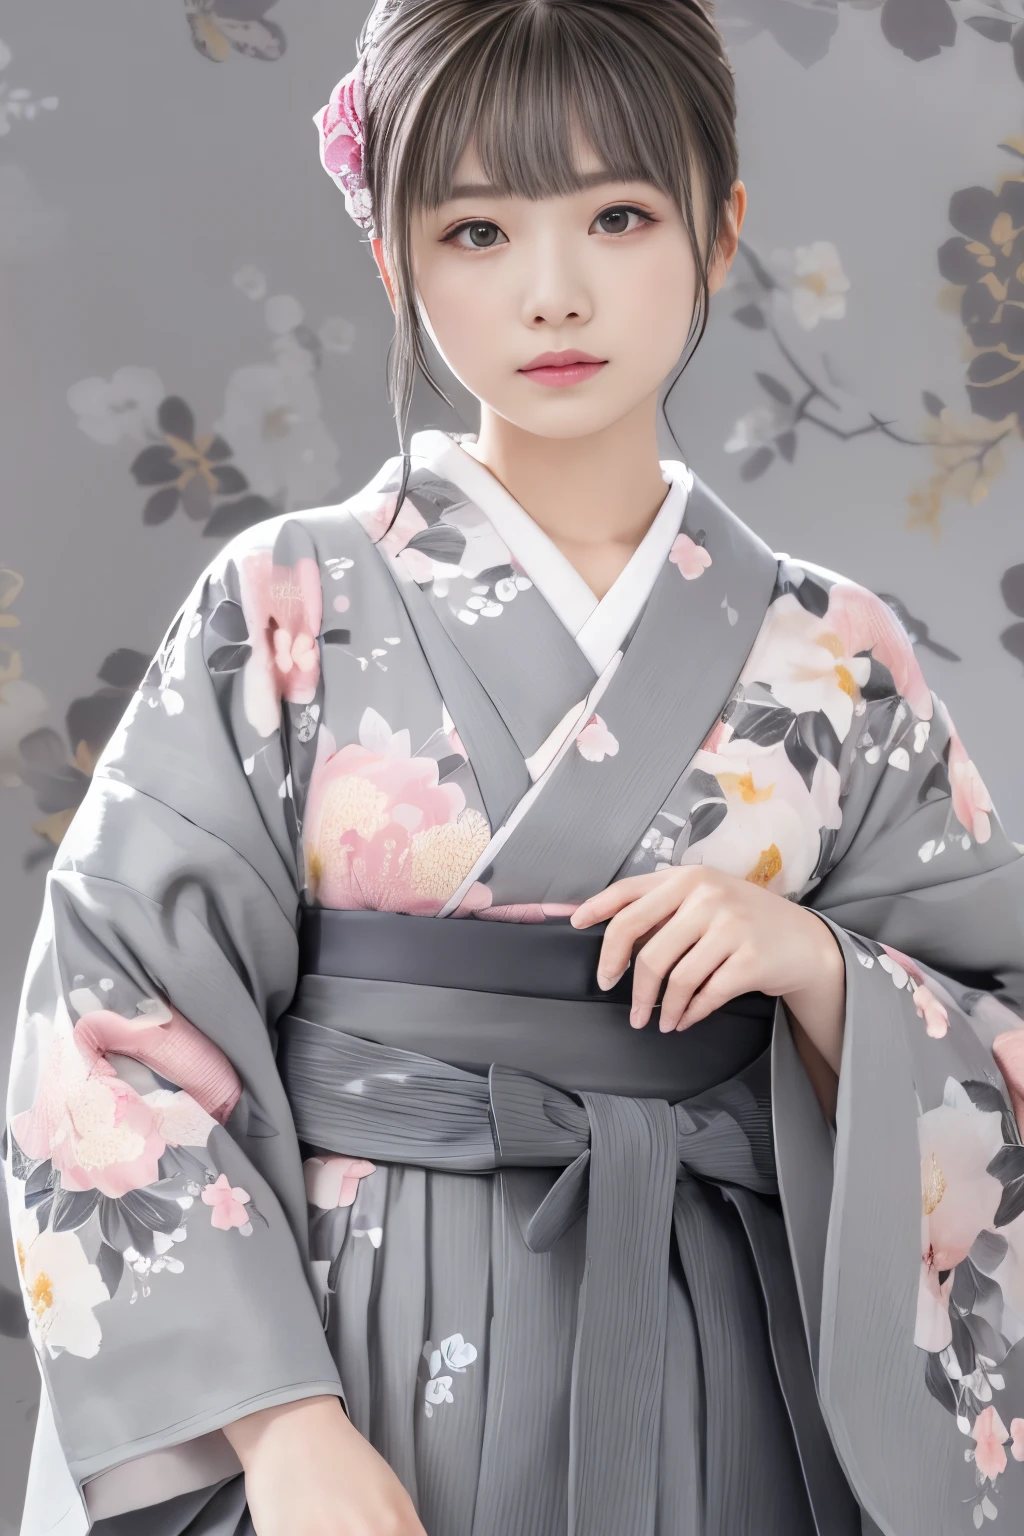 (((fondo floral gris:1.3)))、mejor calidad, Mesa, alta resolución, (((1 chica en))), dieciséis años,(((Los ojos son grises:1.3)))、kimono gris、((hermoso kimono gris)), Efecto Tindall, Realista, Estudio de sombras,Iluminación ultramarina, iluminación de dos tonos, (Máscaras de alto detalle: 1.2)、Iluminación de colores pálidos、iluminación oscura、 Cámaras réflex digitales, foto, alta resolución, 4k, 8k, Desenfoque de fondo,Desvanecerse maravillosamente、mundo de flores grises